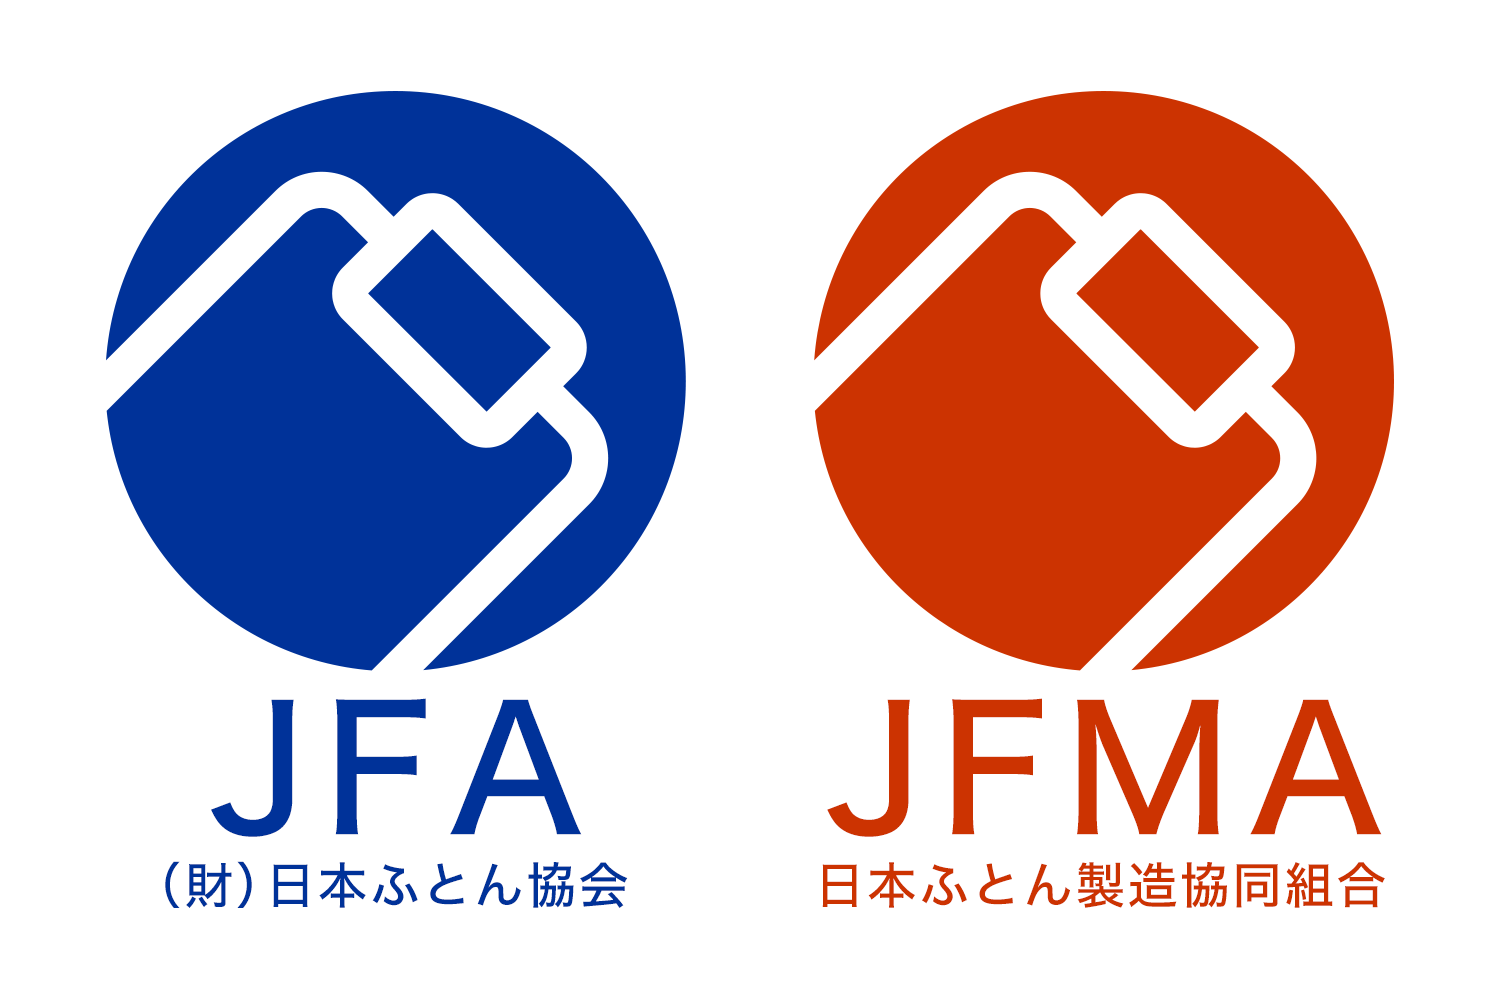 「日本ふとん協会」と「日本ふとん製造協同組合（JFMA）」のロゴマーク